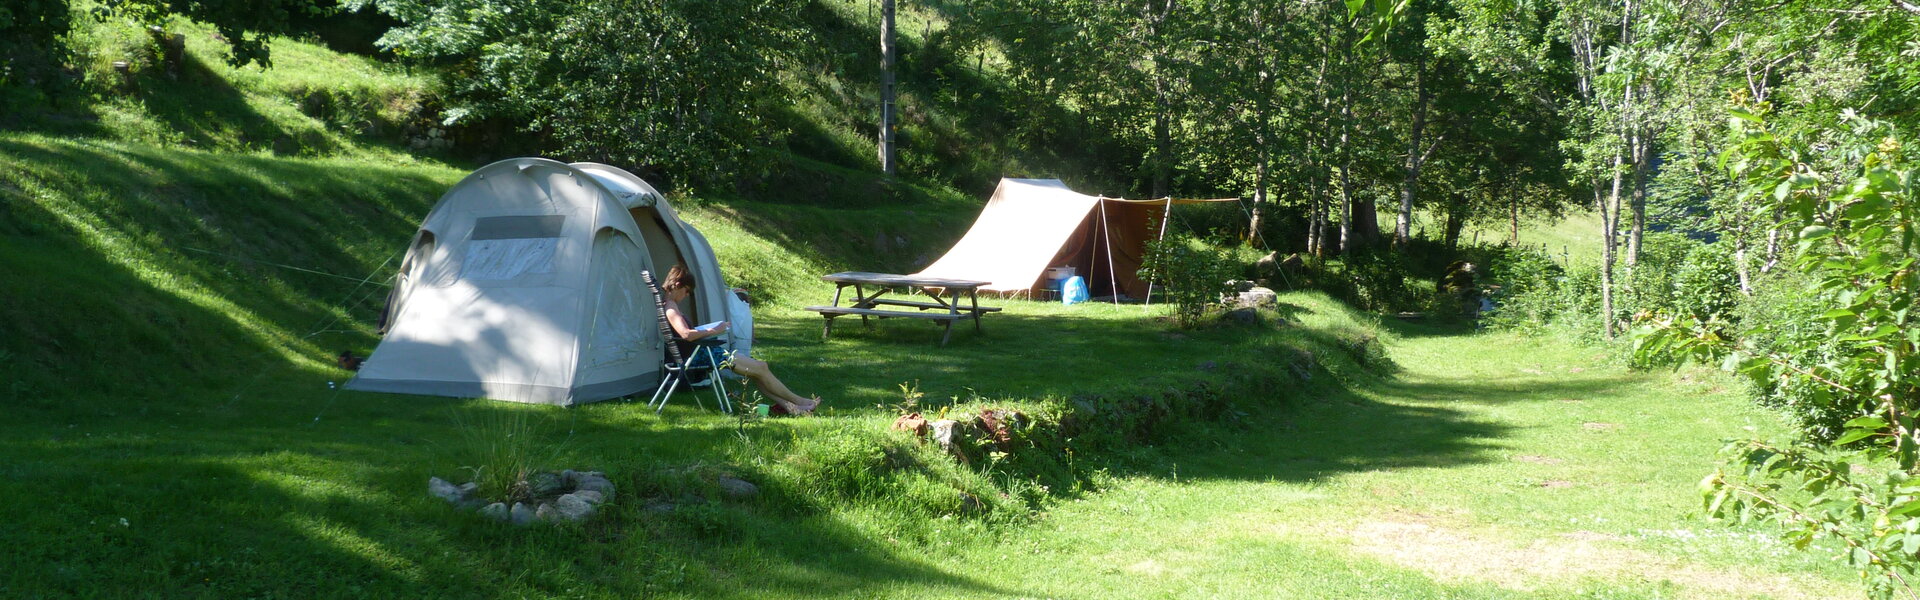 Emplacements Camping au Clou (Thiézac cantal)